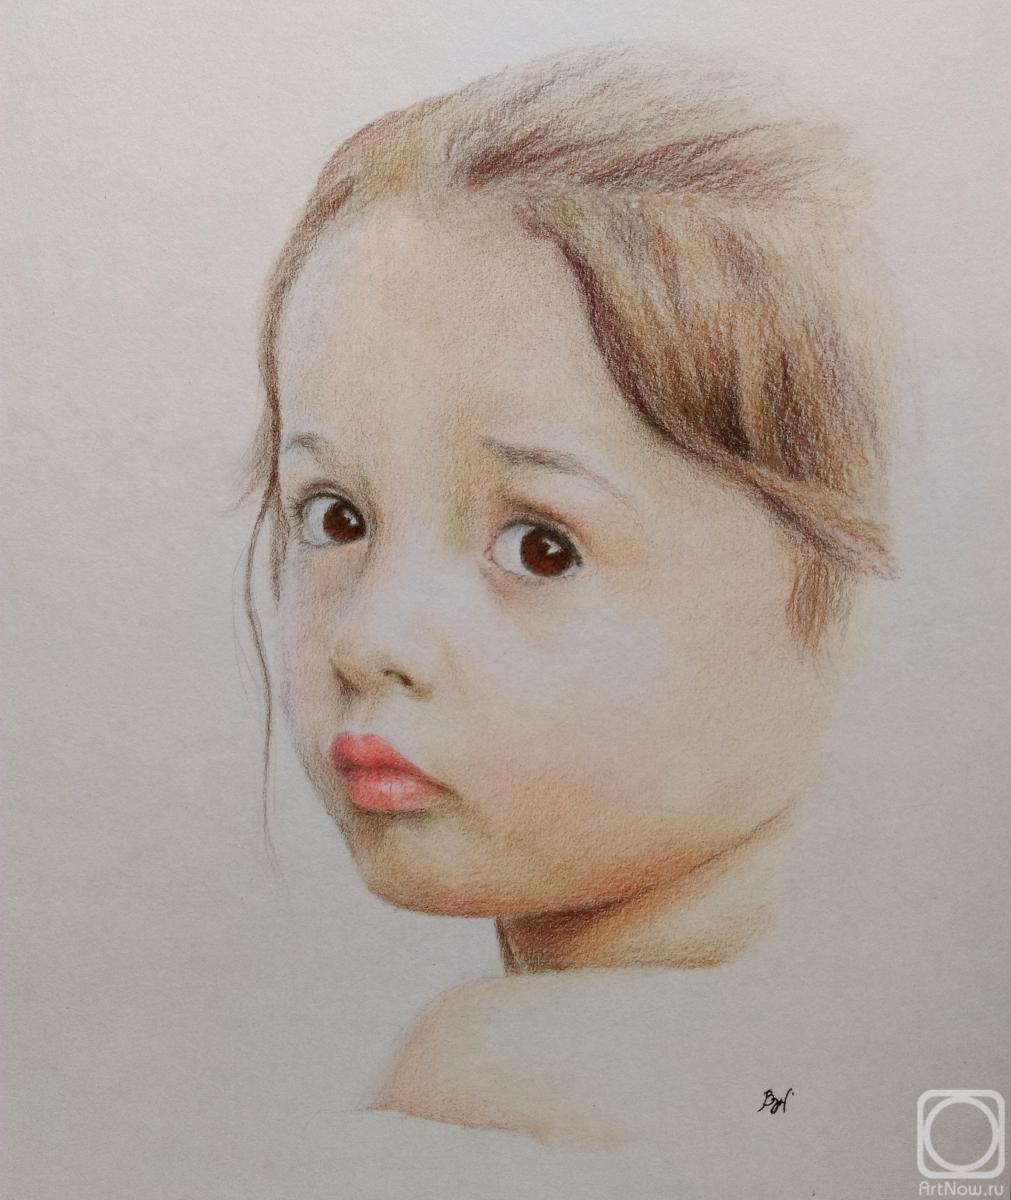 Juravok Weronika. Children's portrait